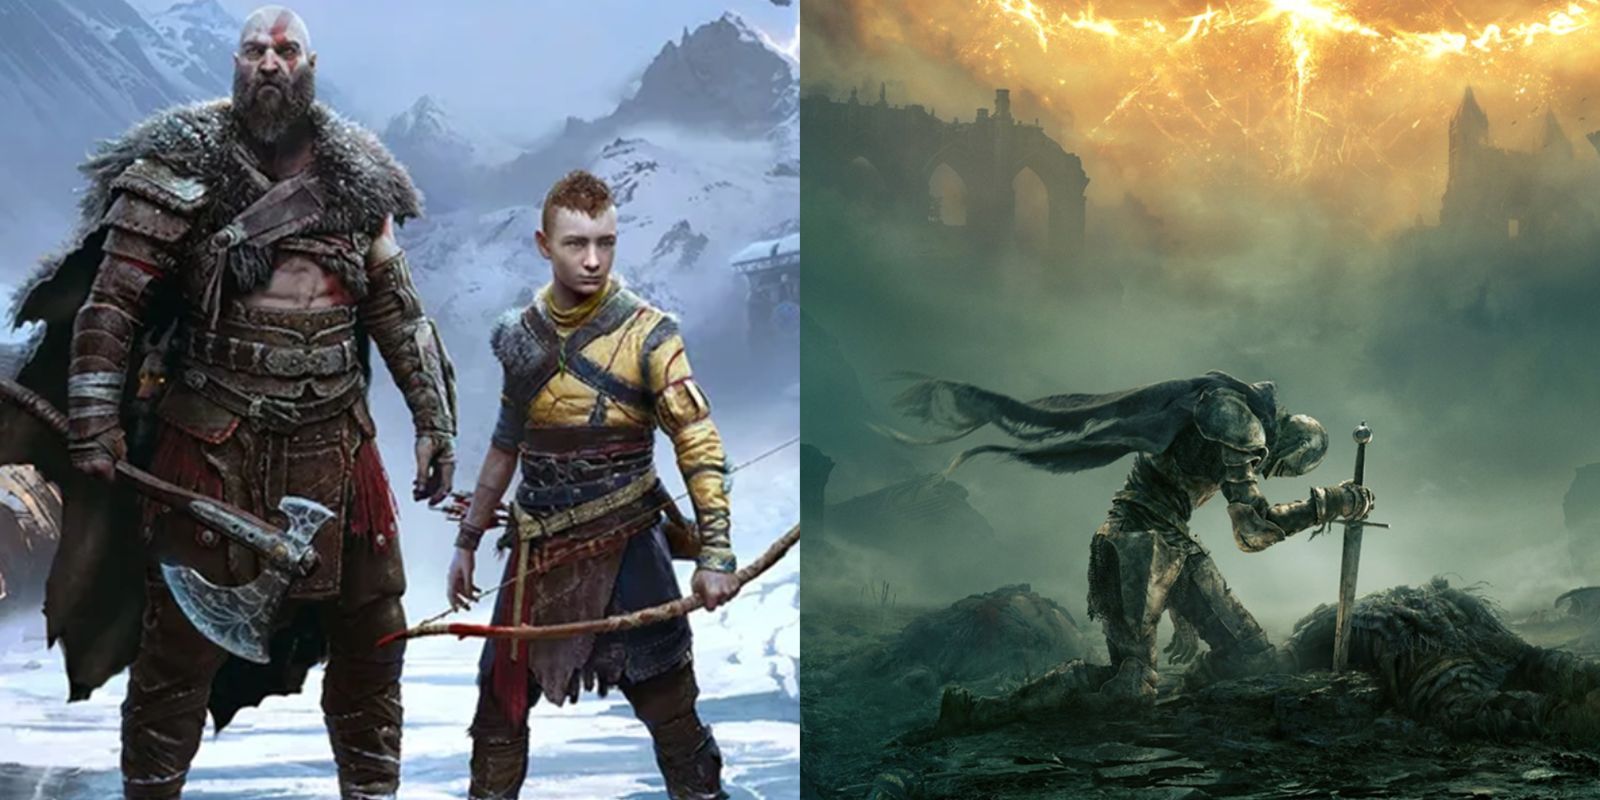 God of War: Ragnarok Dominated at the 2022 Game Awards Despite